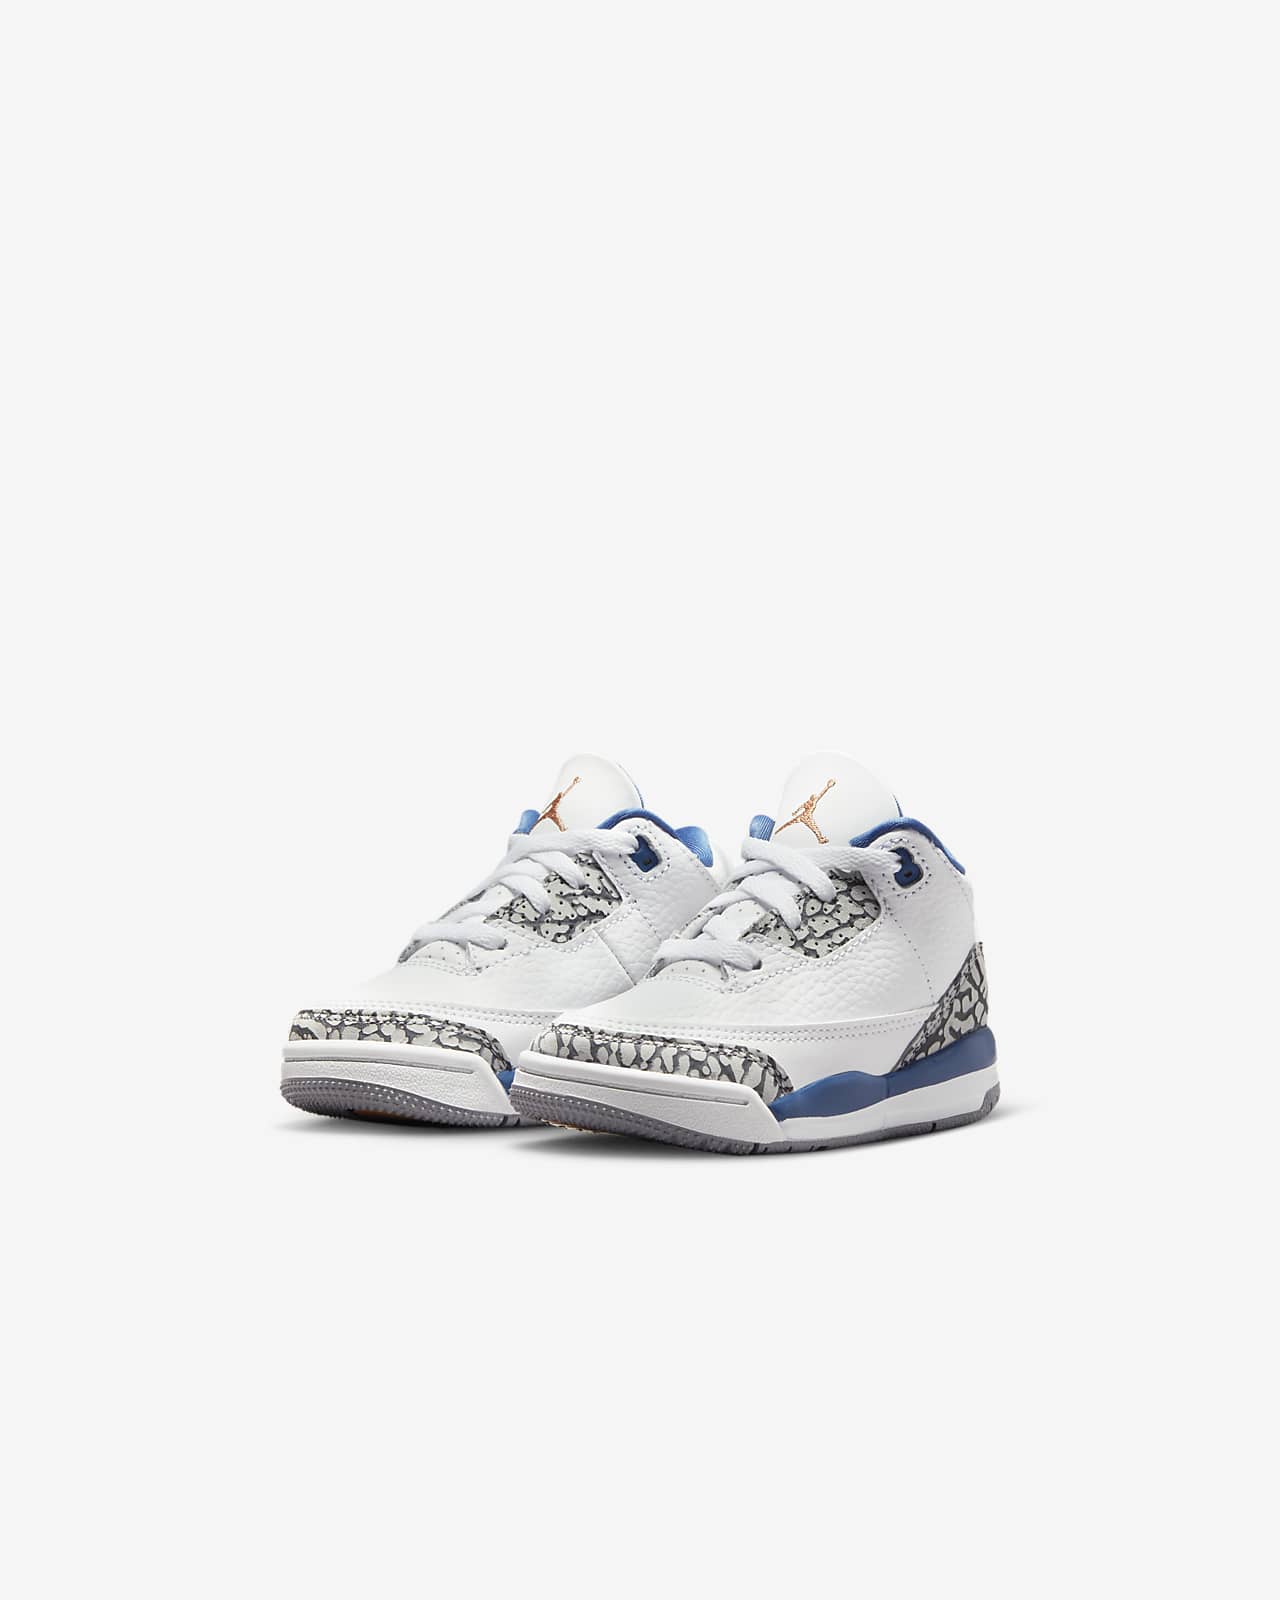 Jordan 3 Baby/Toddler Shoes. Nike